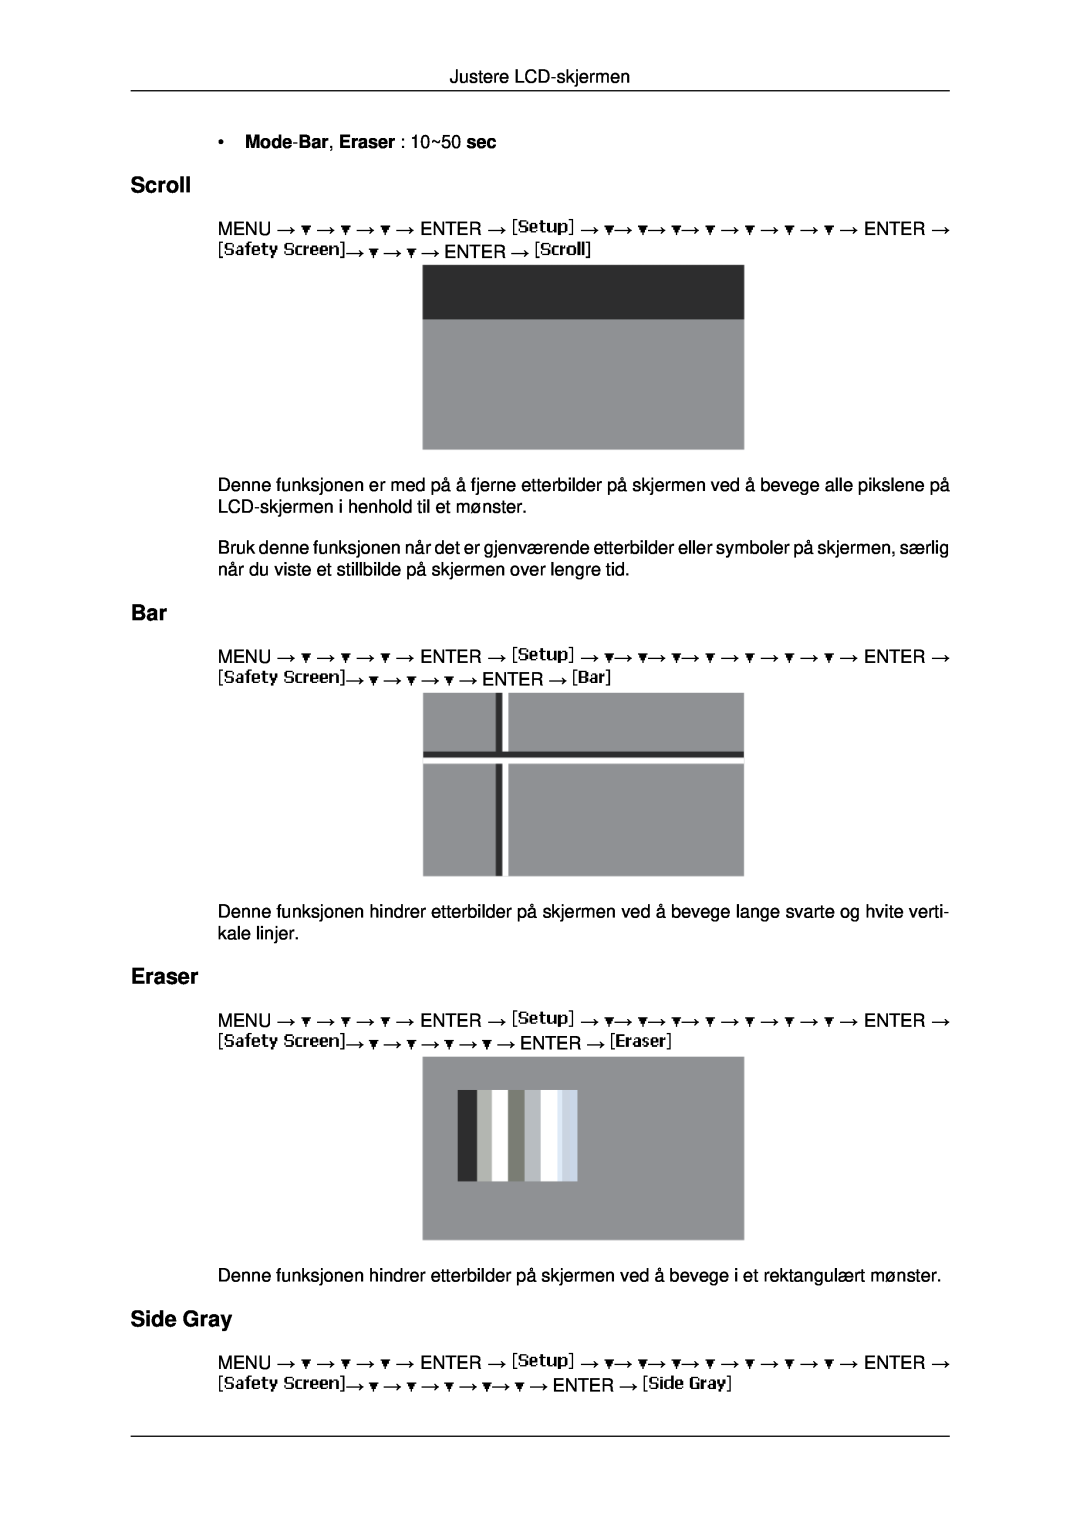 Samsung LH46MRPLBF/EN, LH40MRTLBC/EN, LH40MRPLBF/EN, LH46MRTLBC/EN manual Scroll, Side Gray, Mode-Bar, Eraser 10~50 sec 